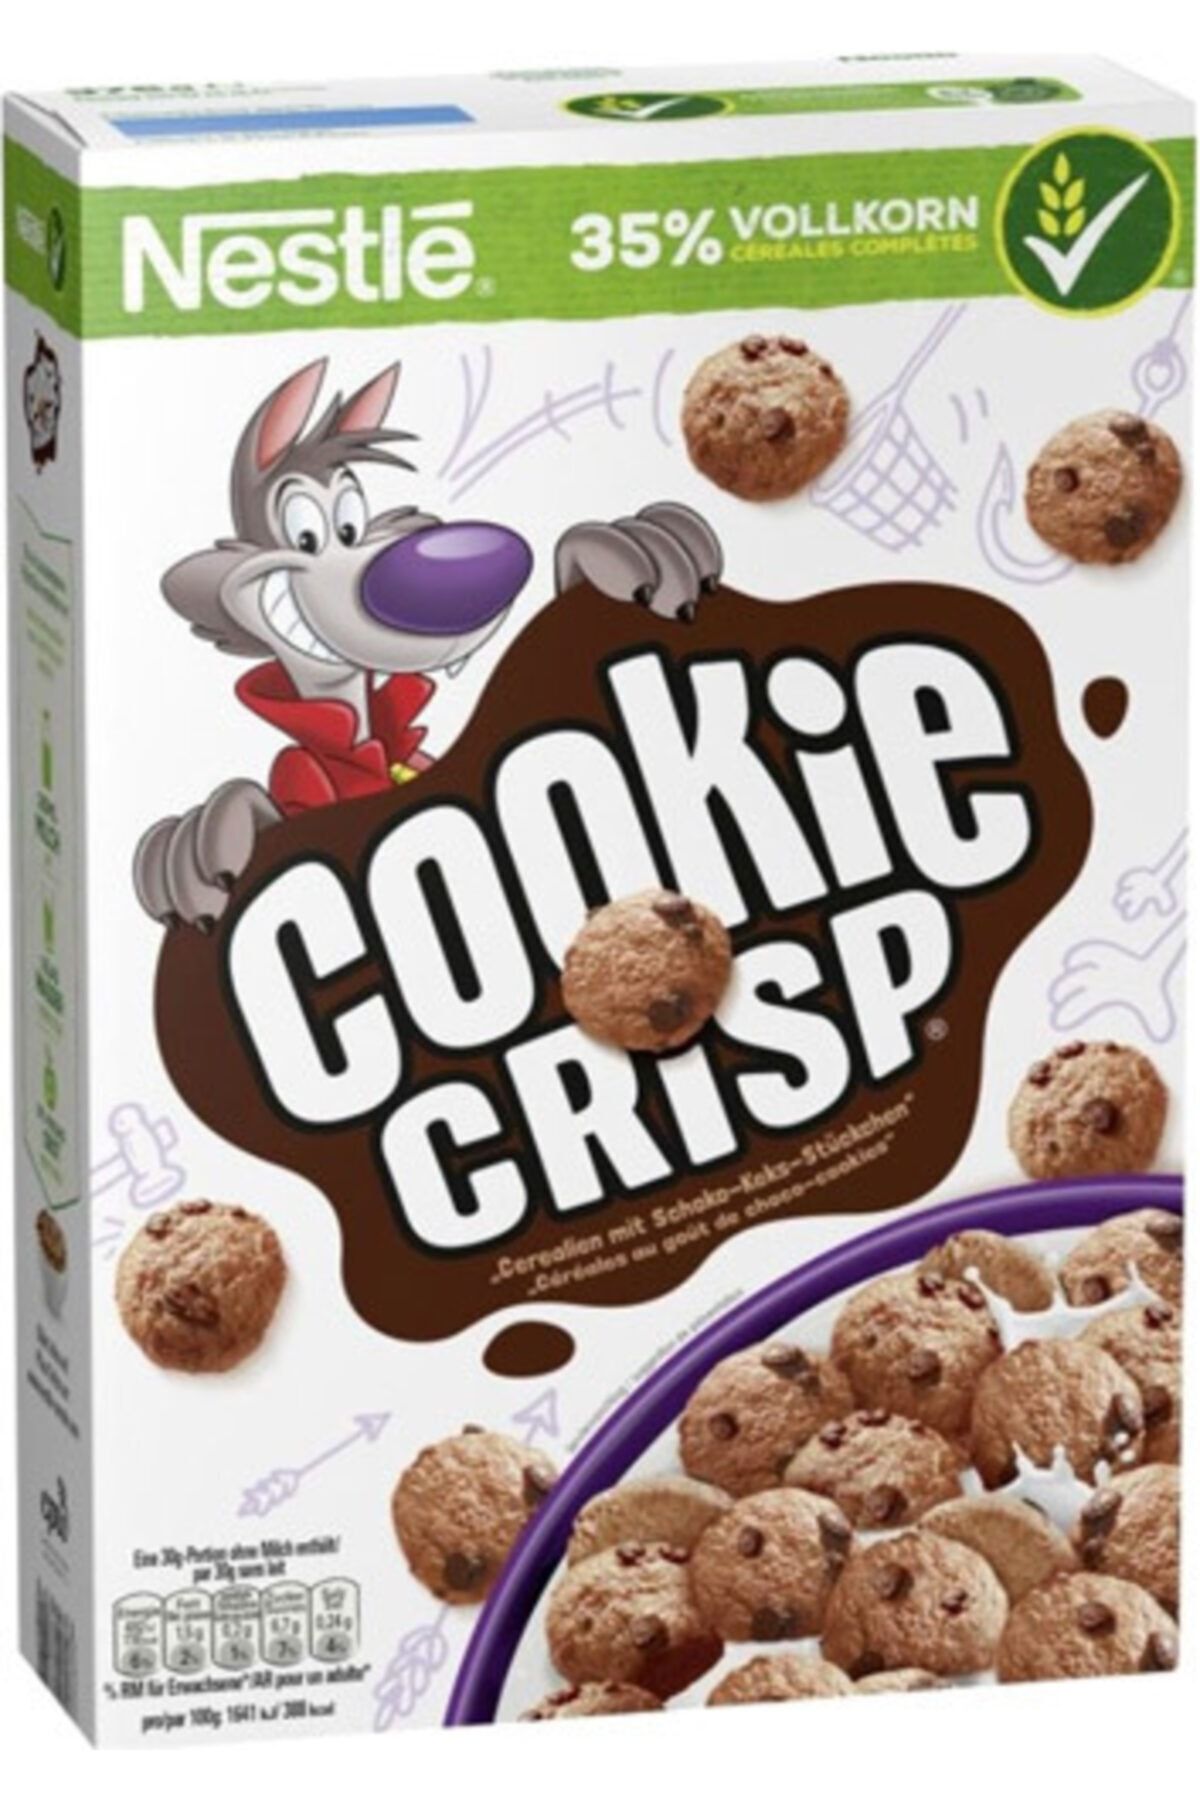 Nestle Cookie Crisp %35 Vollkorn 375 G